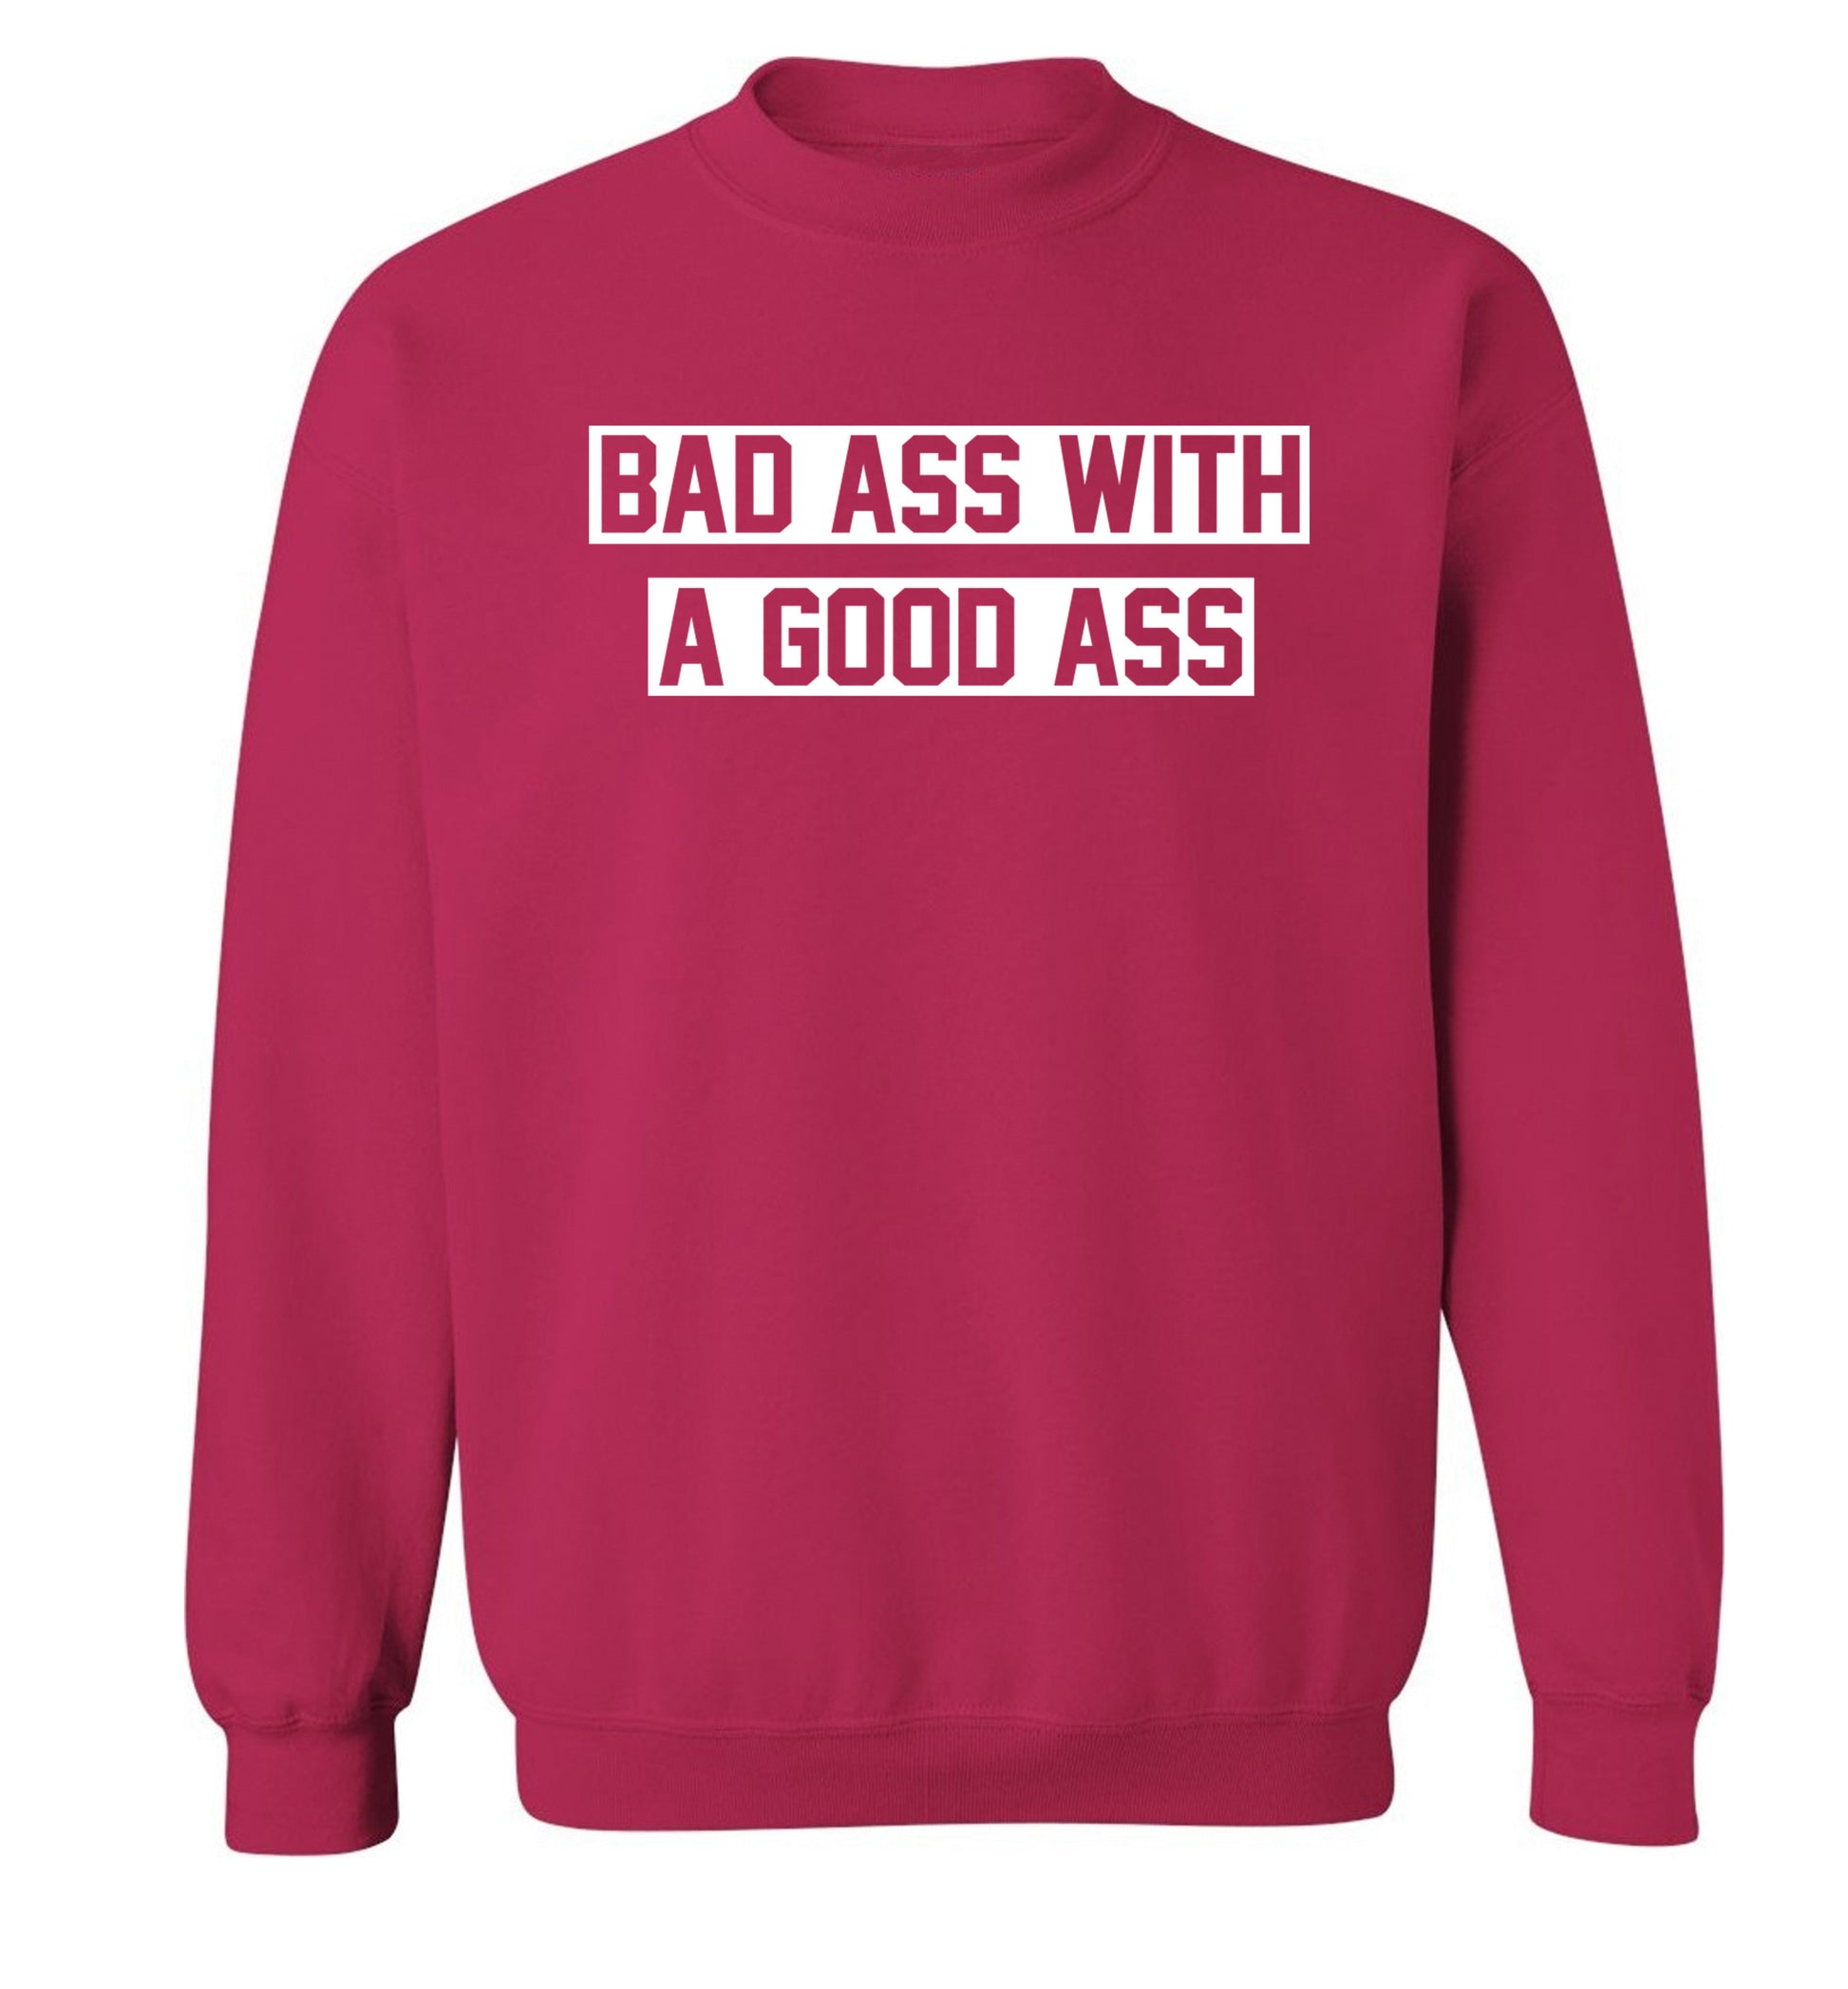 A bad ass with a good ass Adult's unisex pink Sweater XL